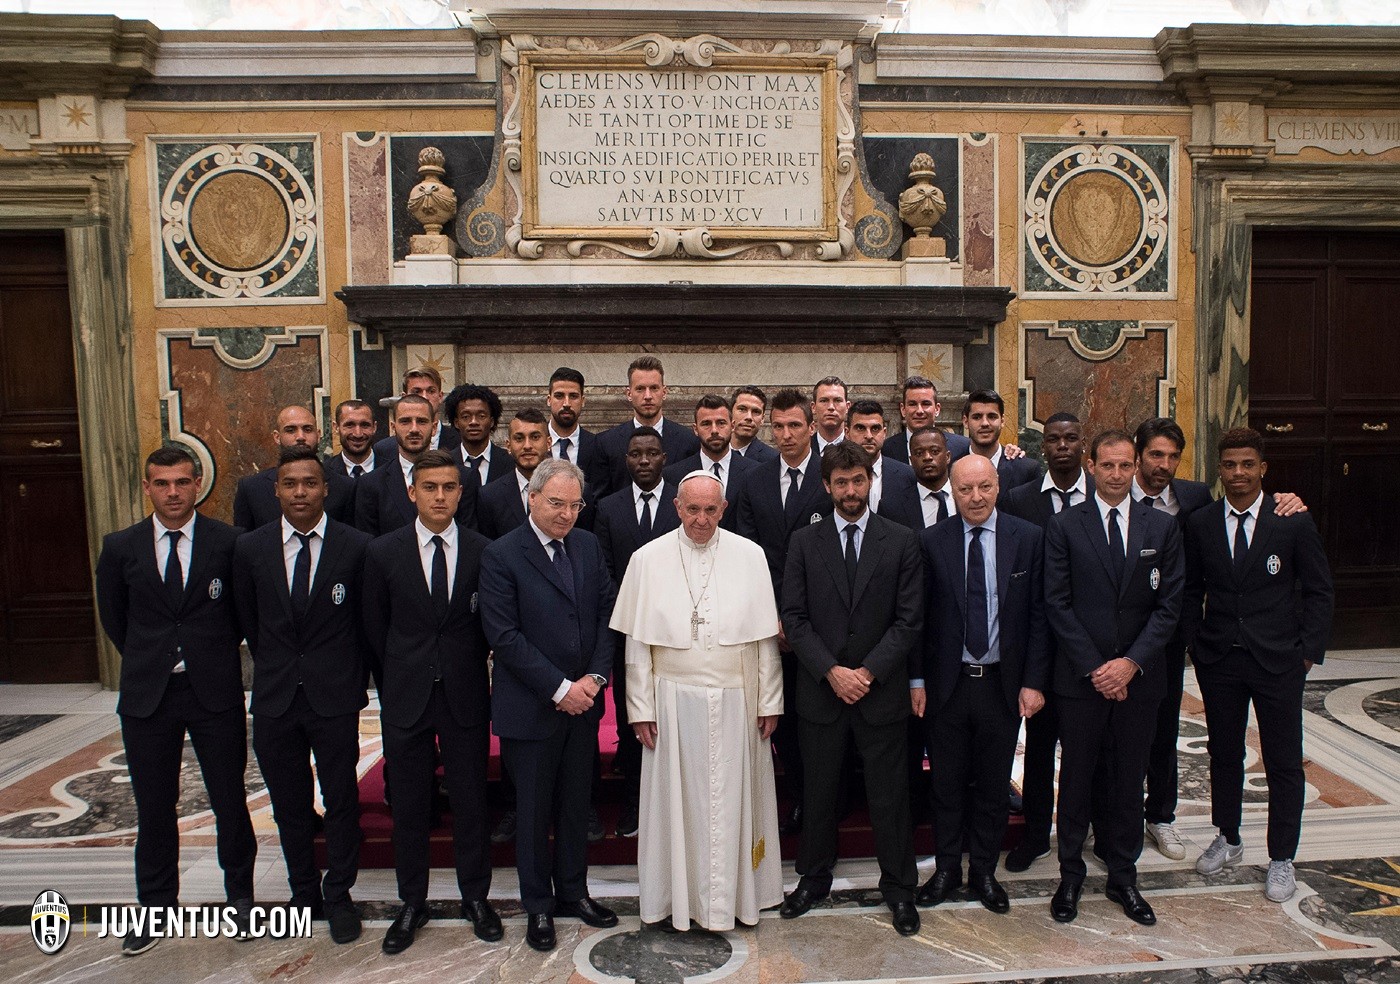 Папа Римский встретился с игроками «Милана» и «Ювентуса»